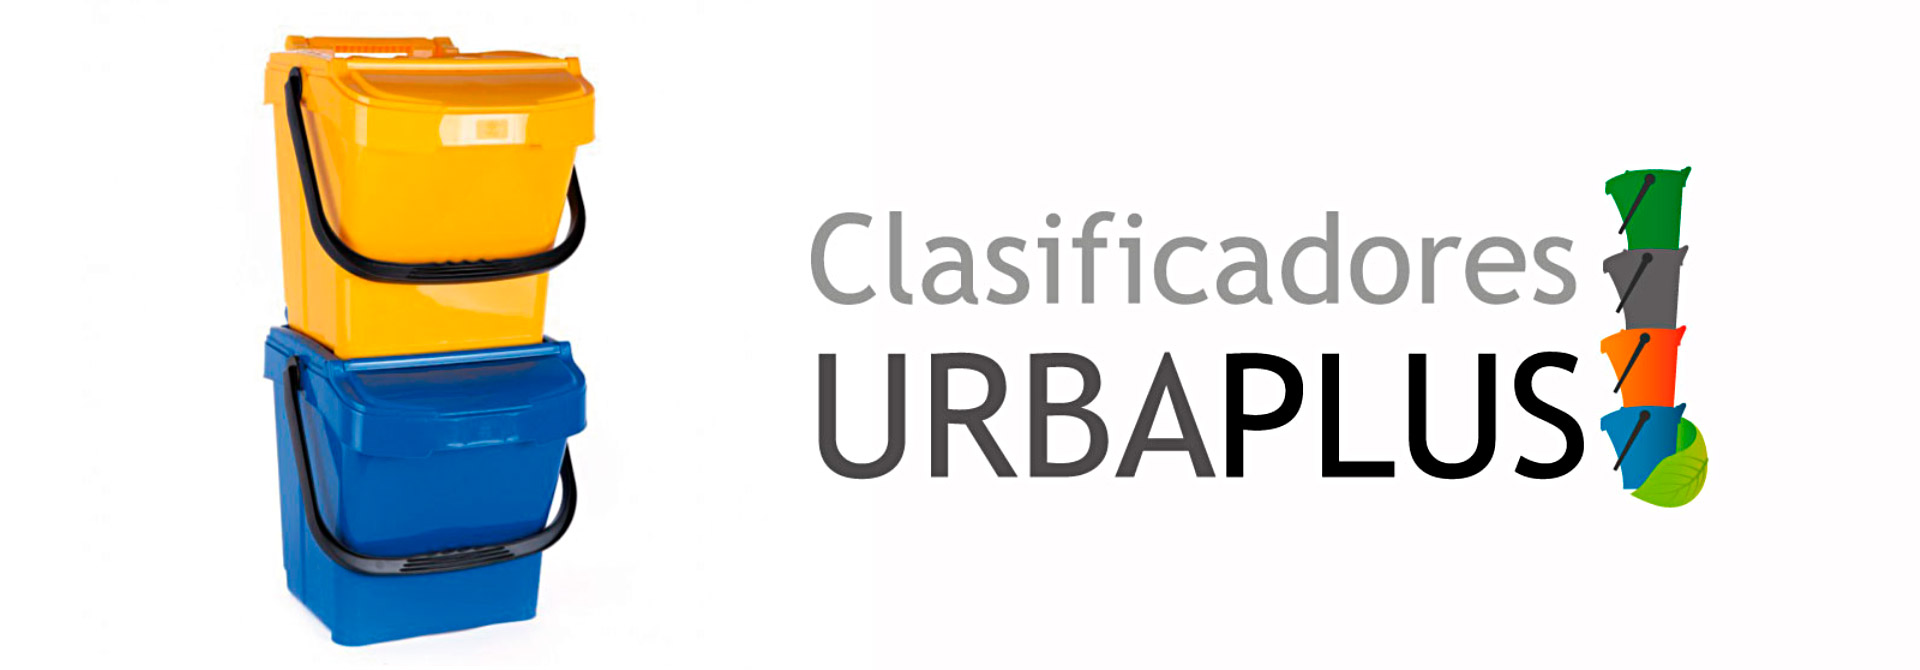 contenedores y clasificadores UrbaPlus